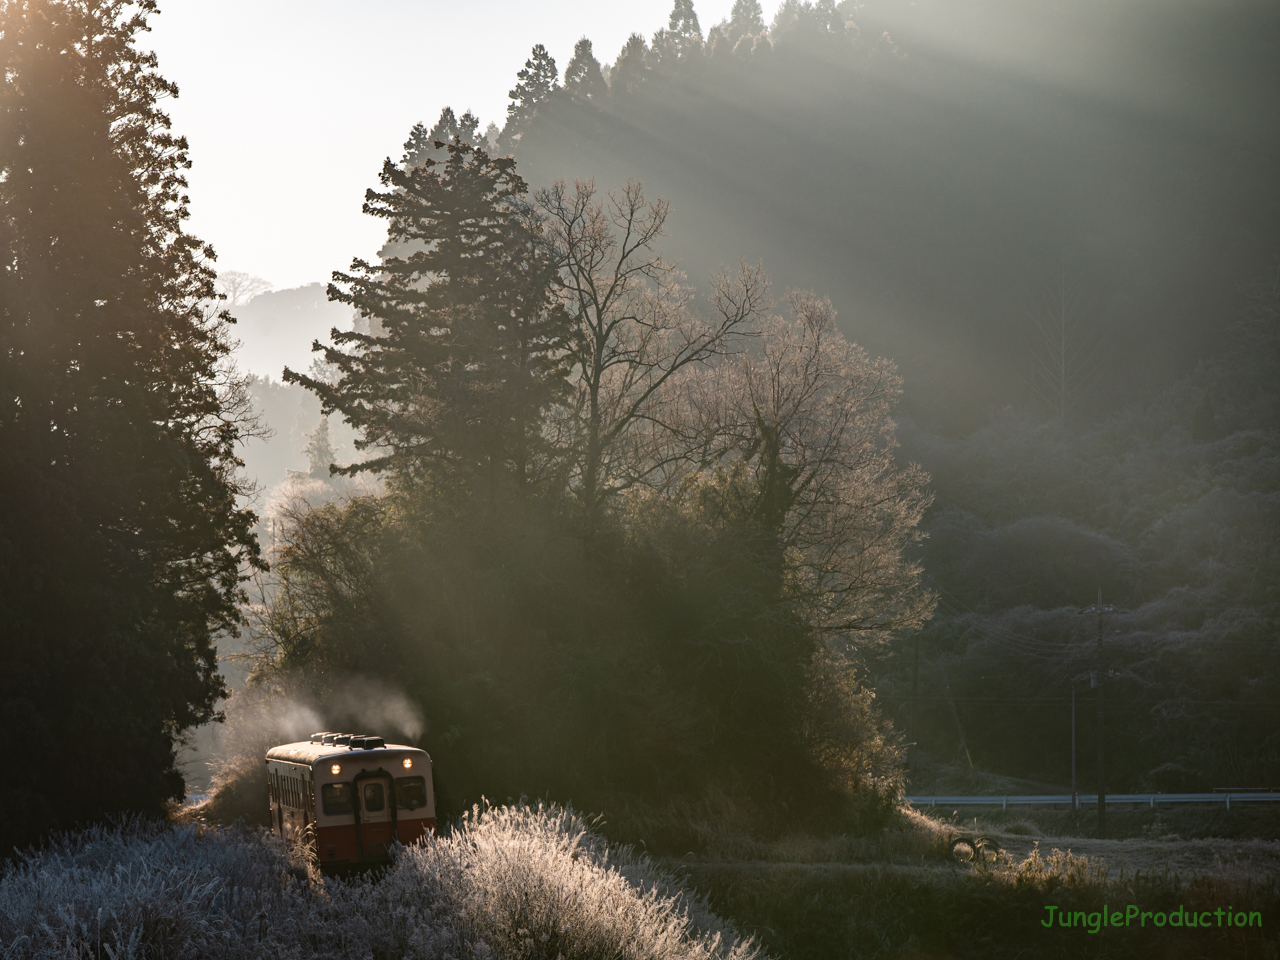 朝の日差しで霜が綺麗に光る風景の中を小湊鉄道の気動車が走る